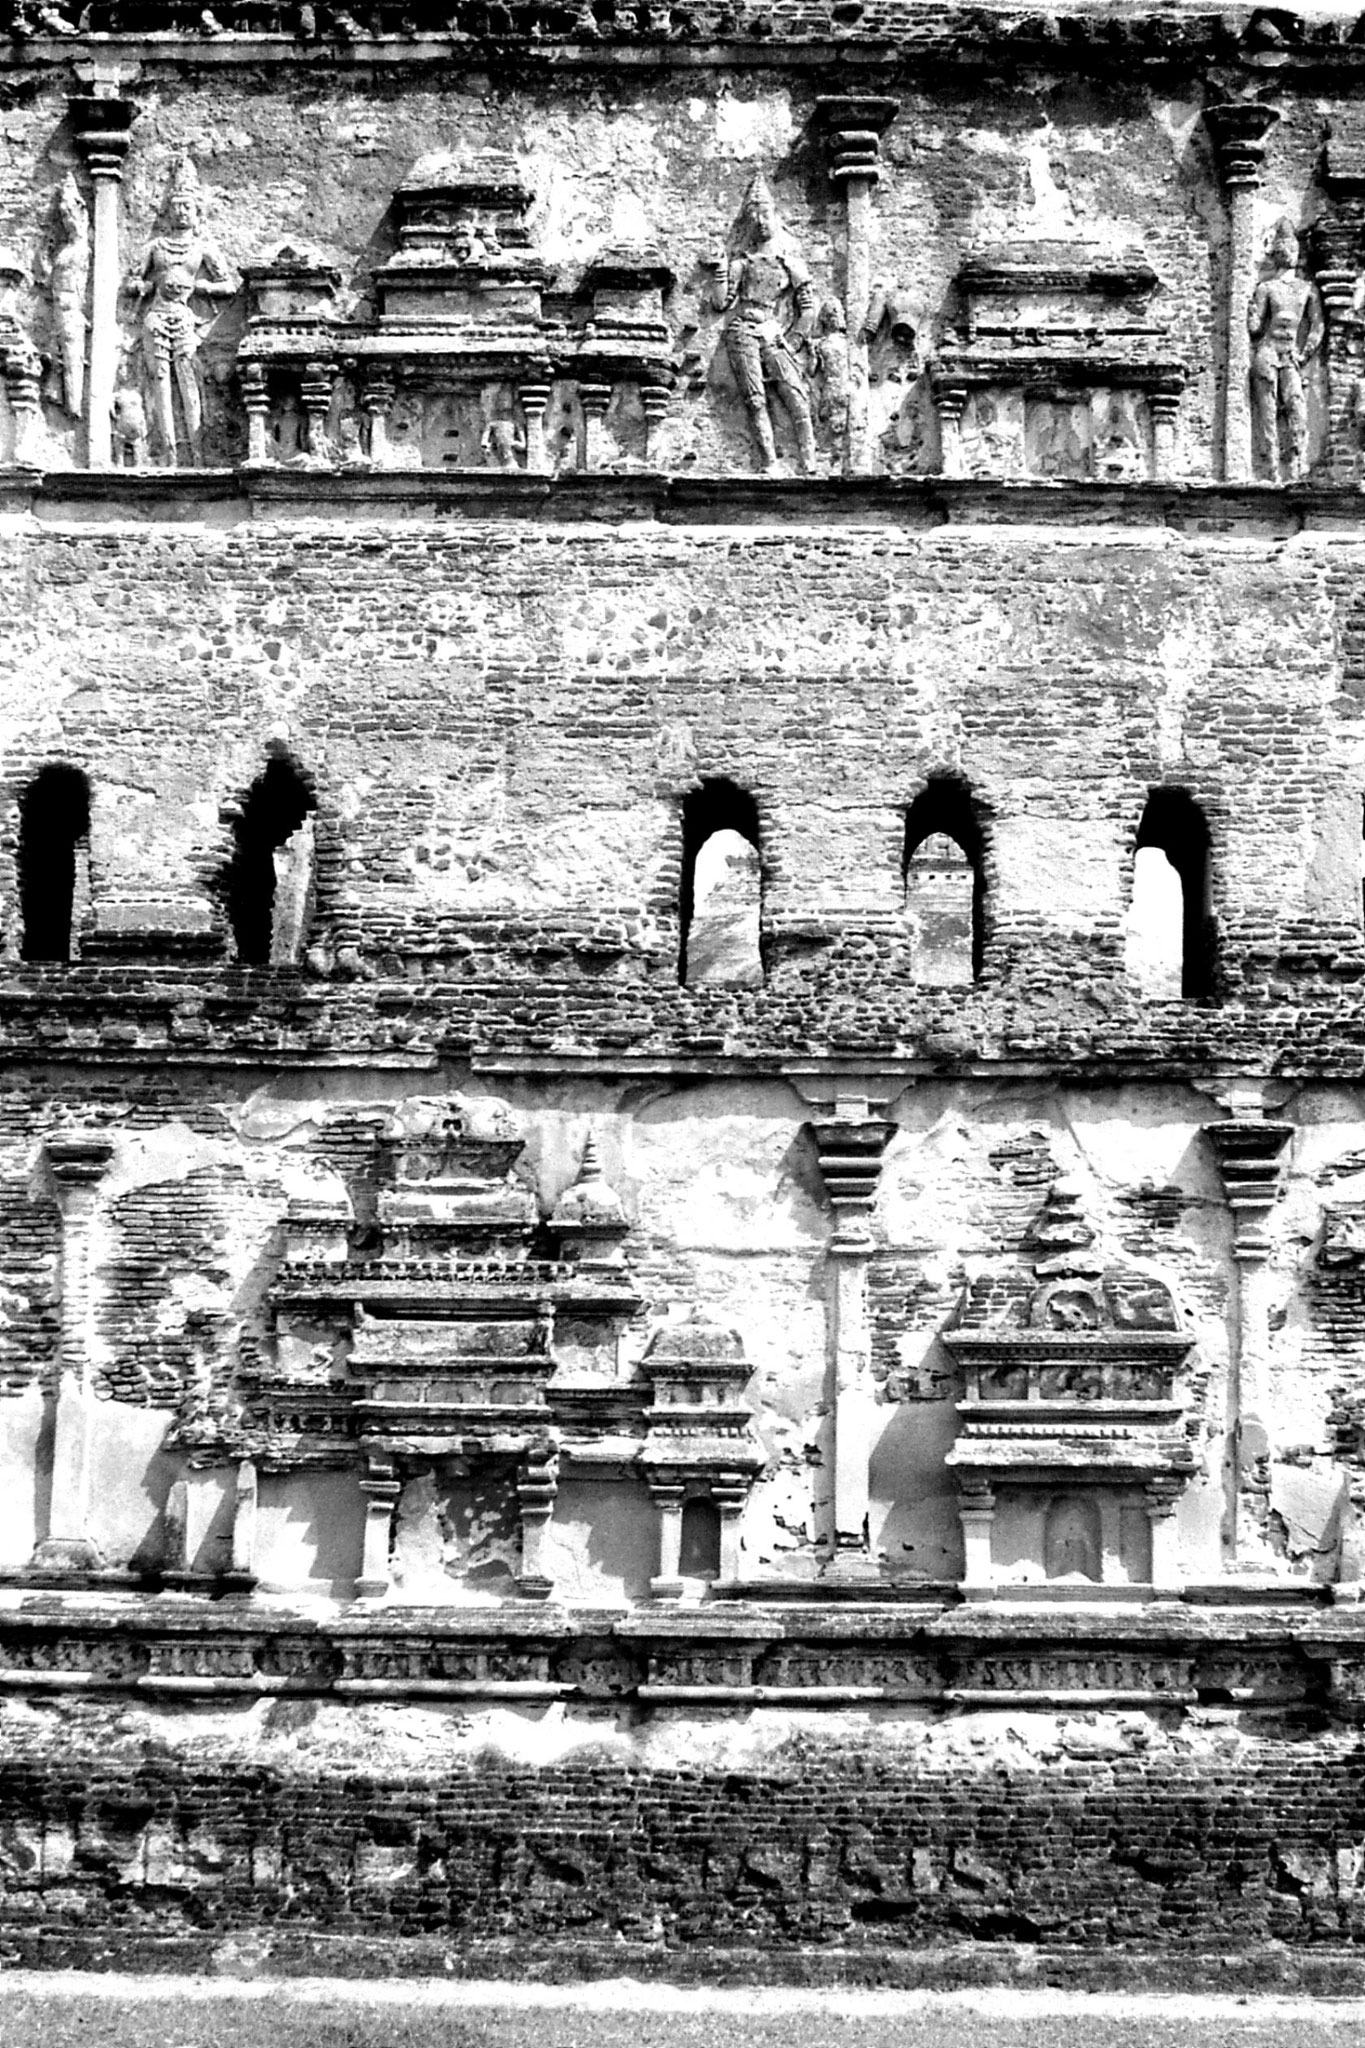 8/2/90: 18: Polonnaruwa